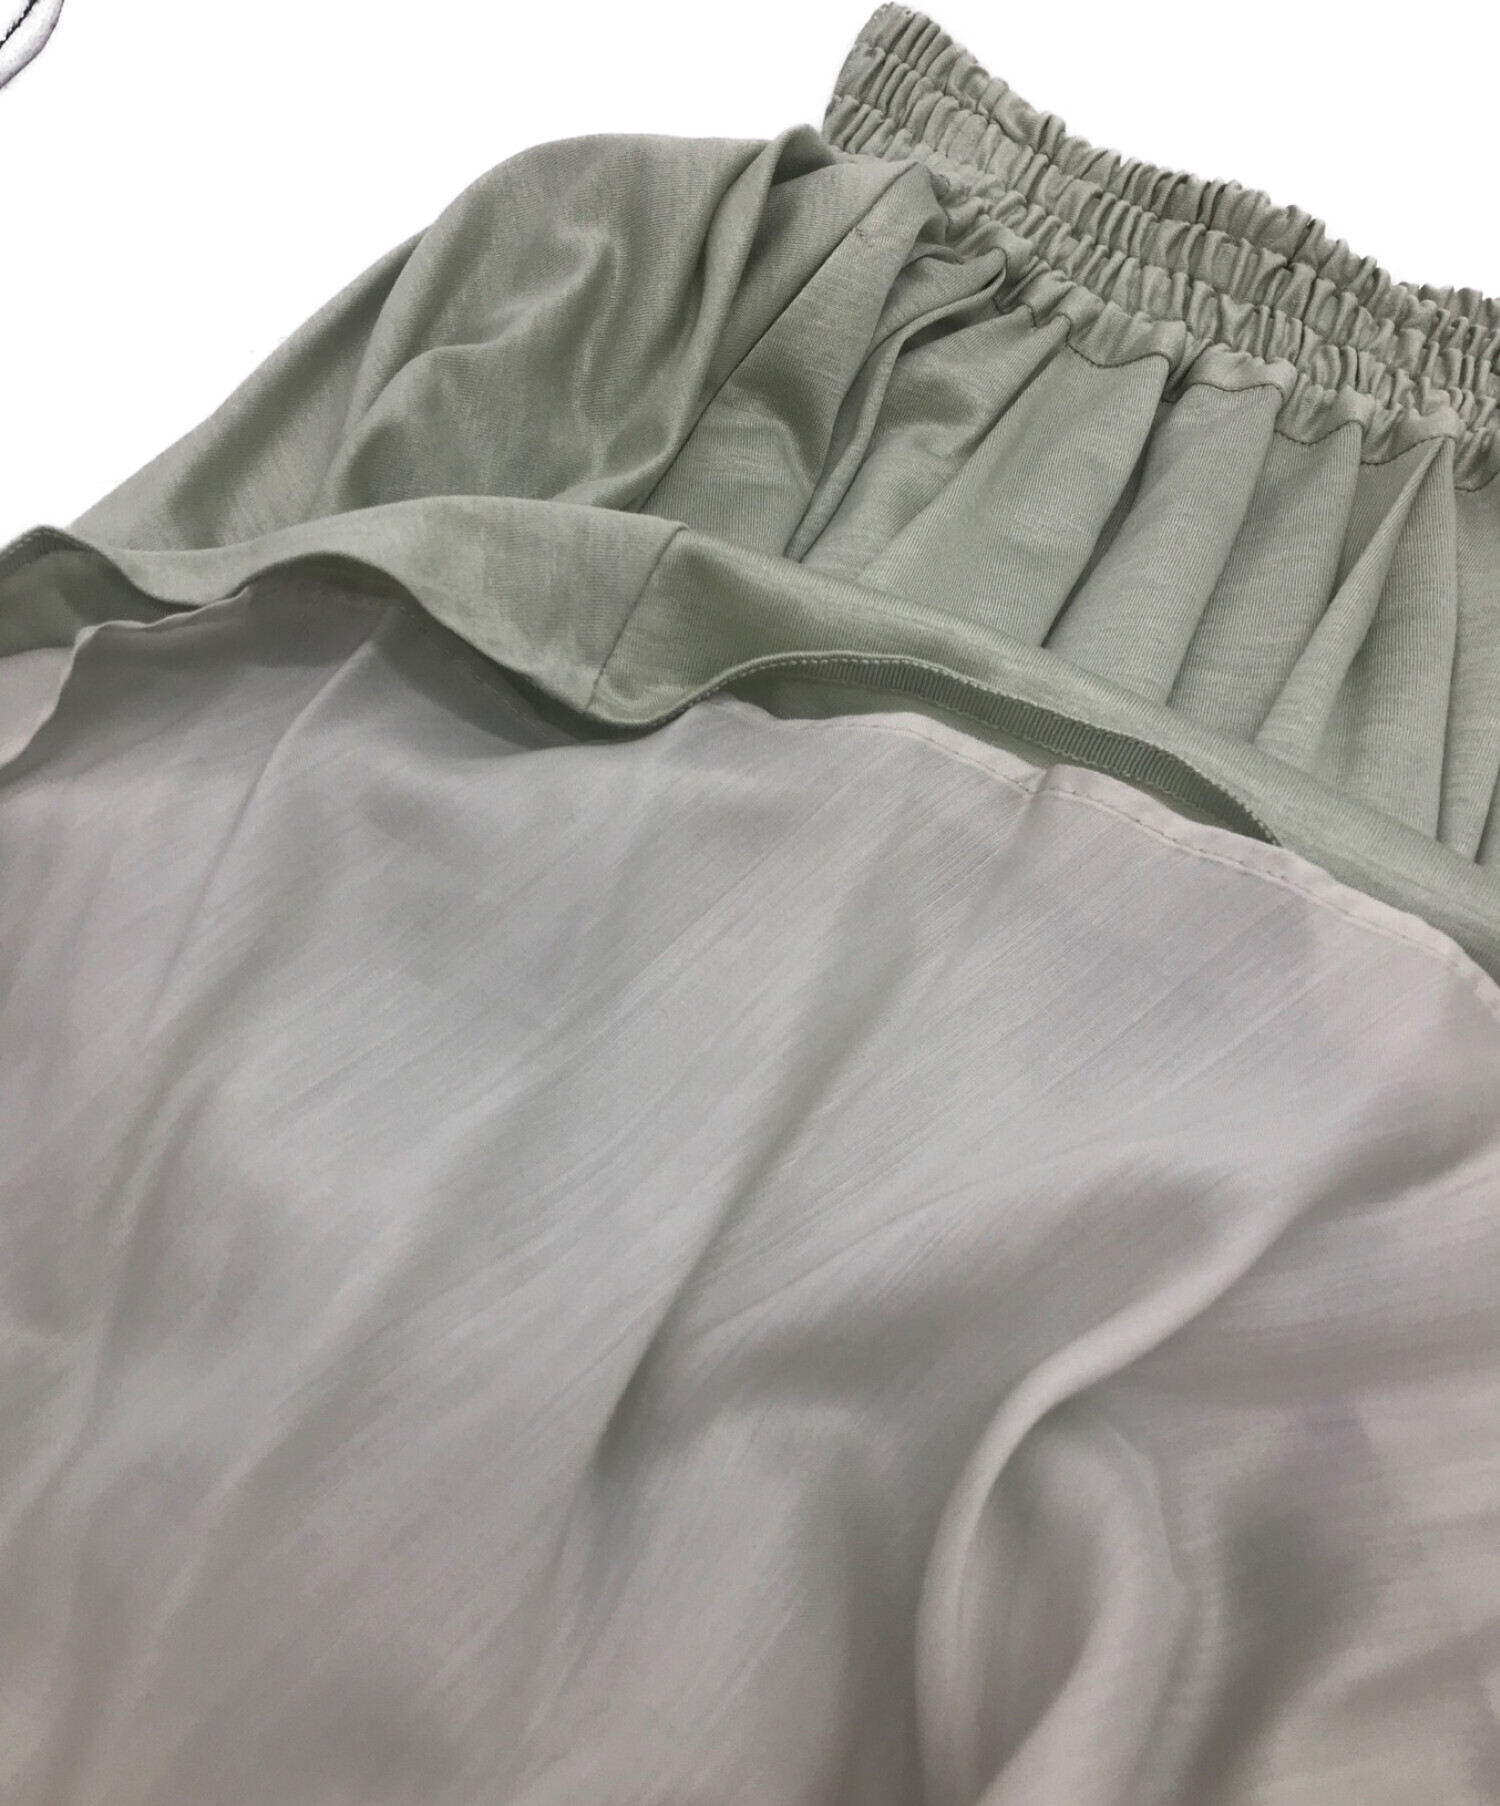 EBURE (エブール) ライトドレープ ウエストゴムギャザースカート グリーン サイズ:36 未使用品